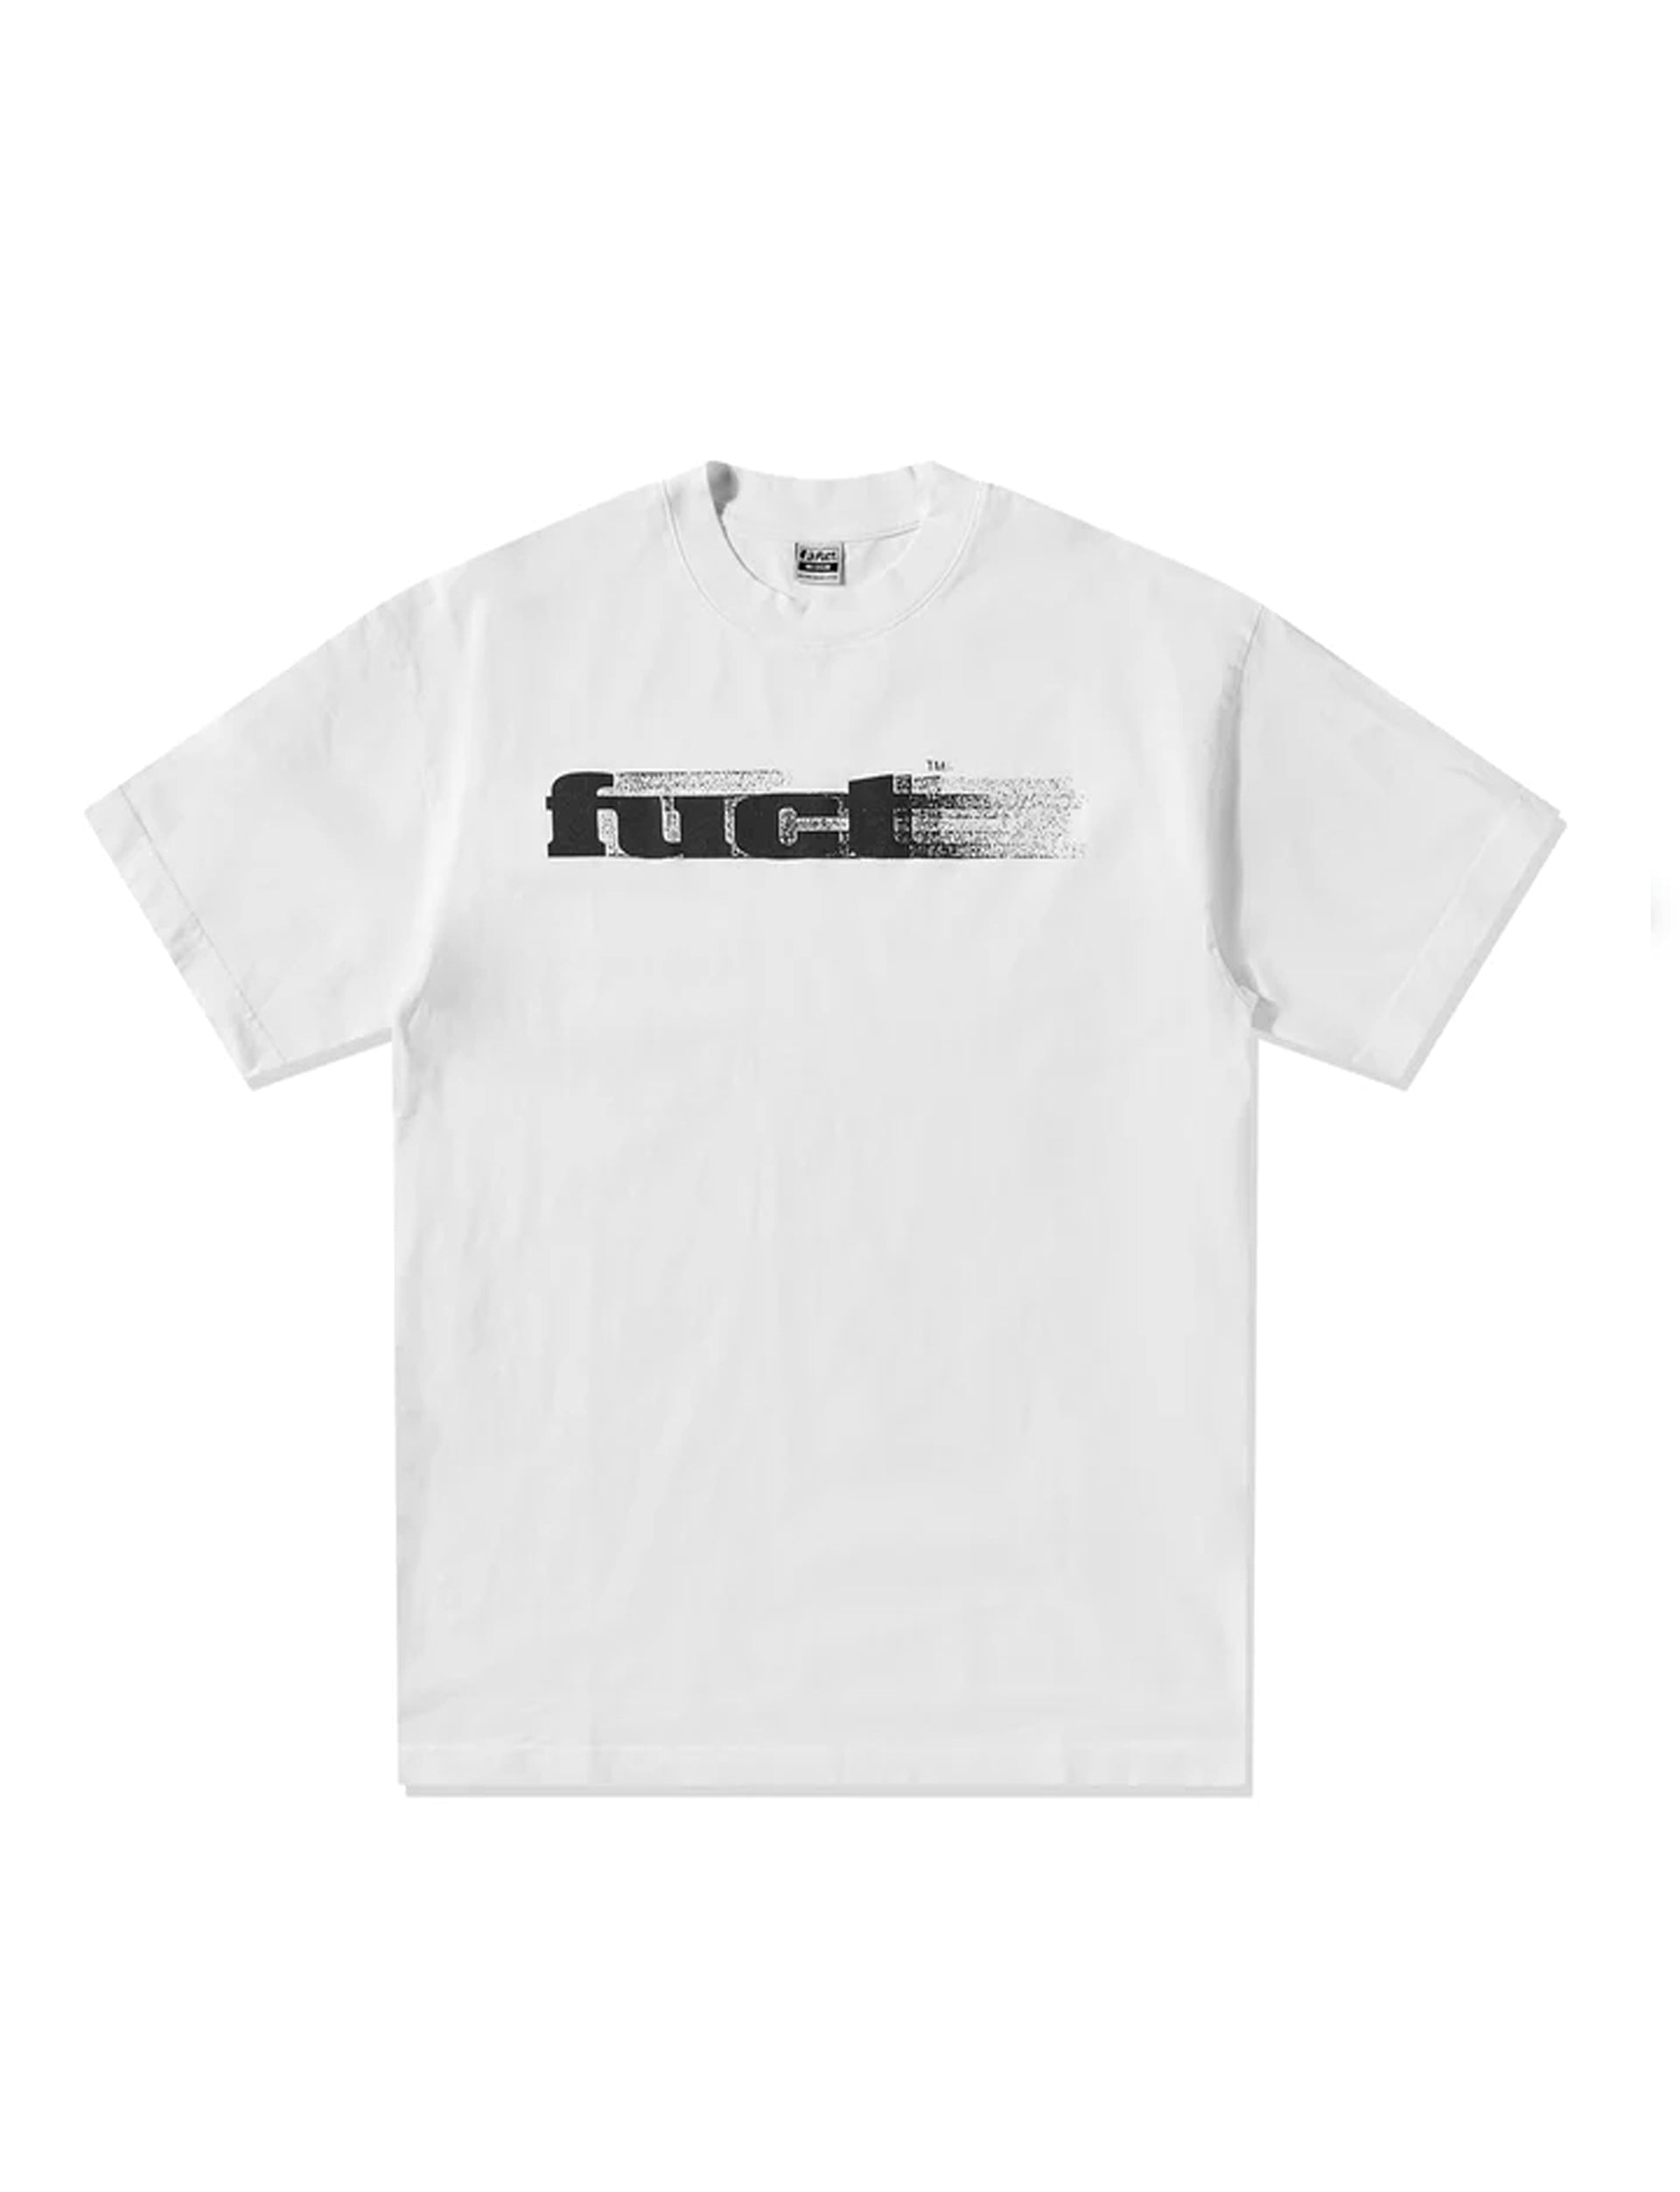 FUCT Og Blurred Logo WHITE